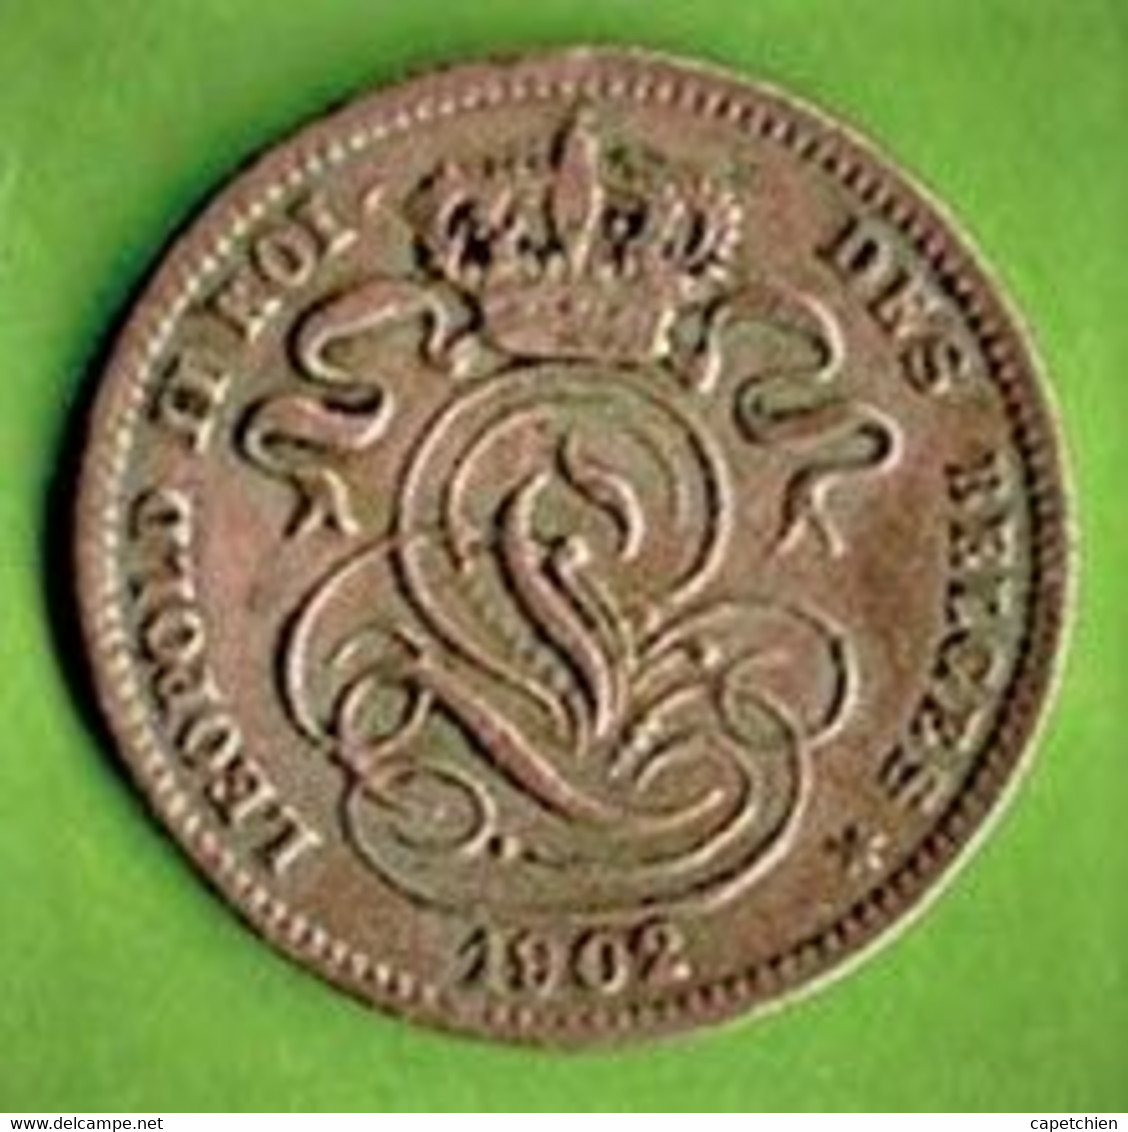 BELGIQUE / 1 CT / 1902 / LEGENDE EN FRANCAIS - 1 Cent